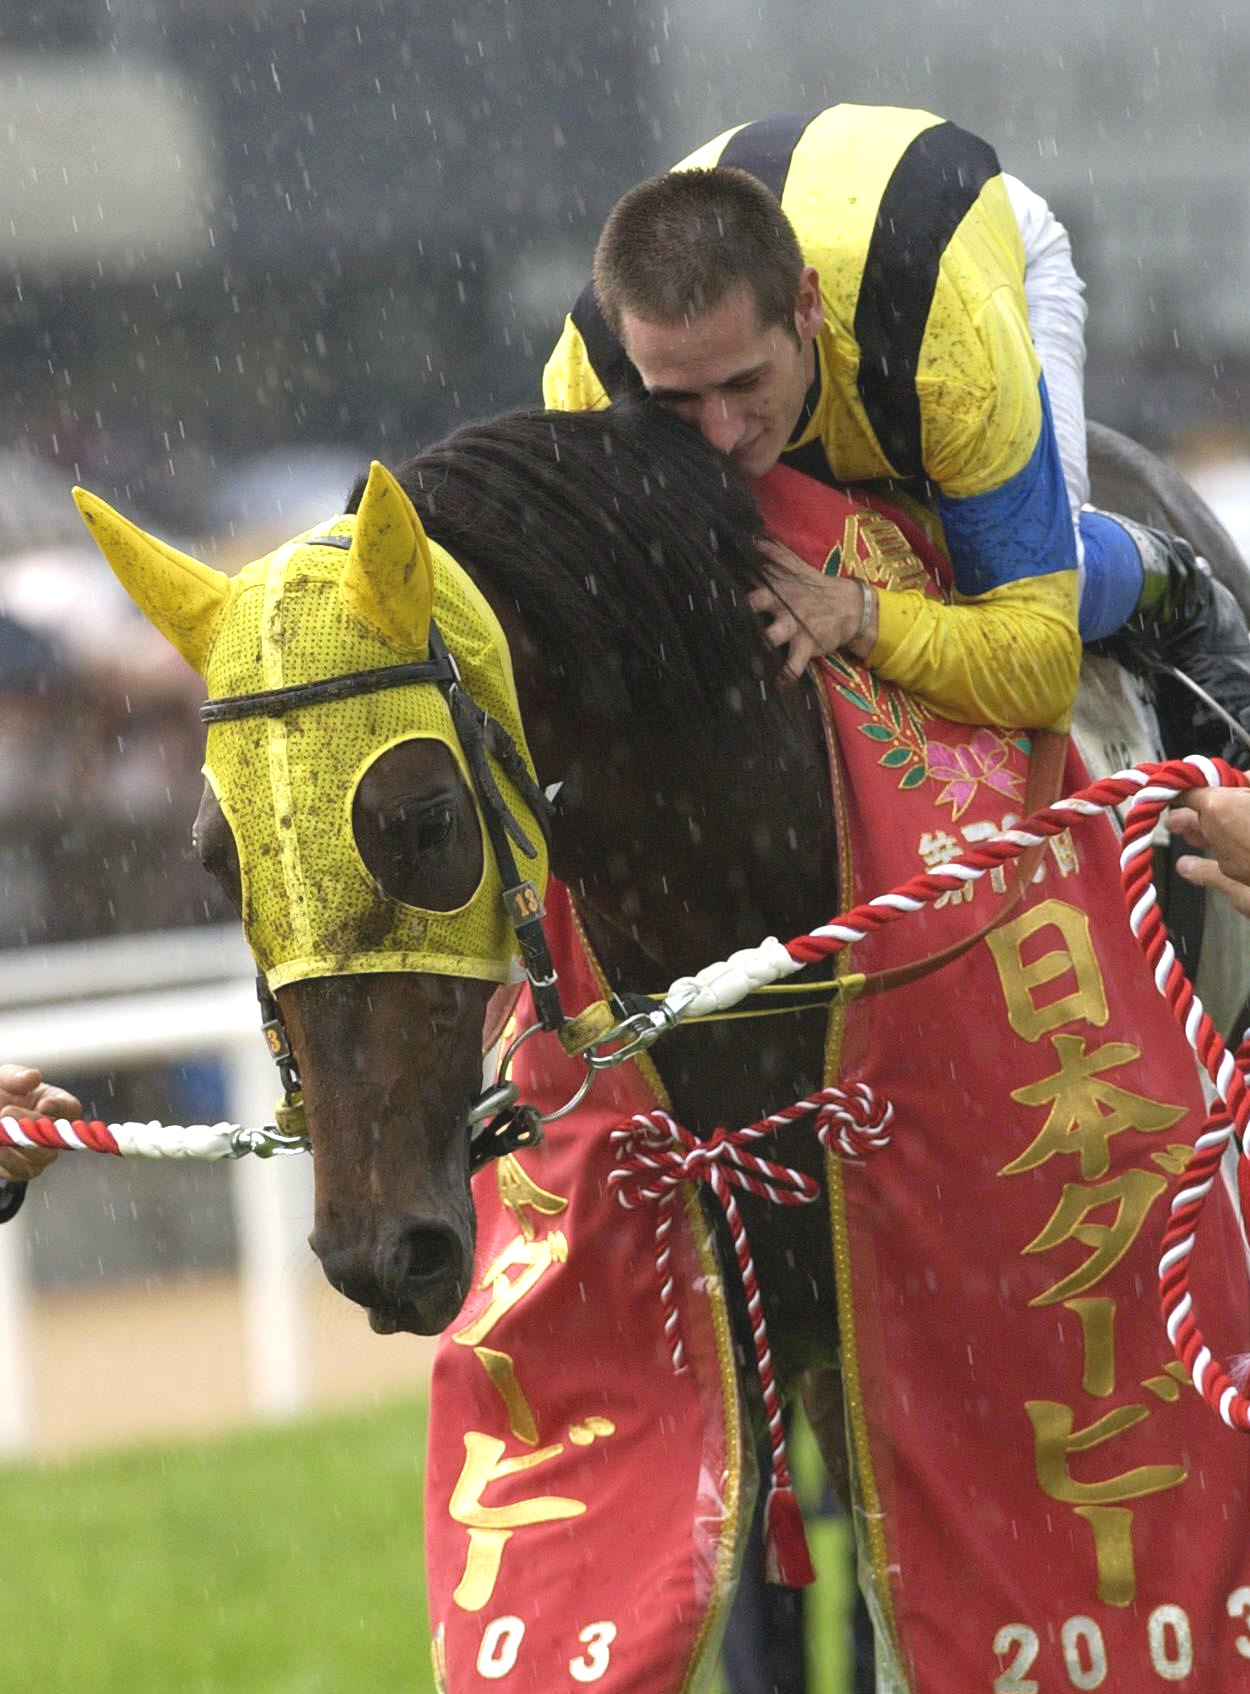 03年ダービーをネオユニヴァースで制したミルコ・デムーロ騎手は愛馬に抱きつく